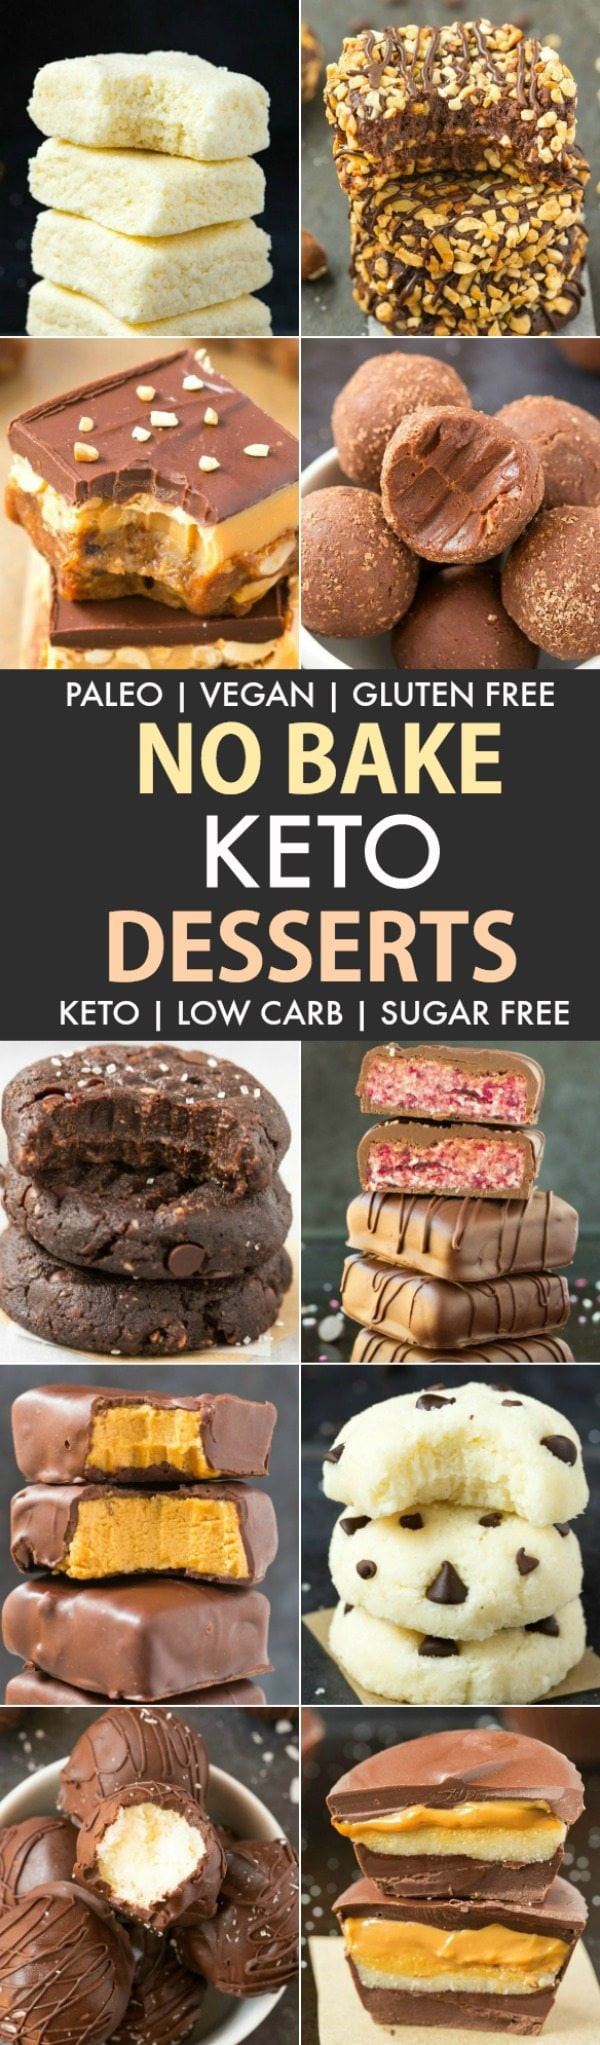 Keto Dessert Recipes Easy No Bake
 Easy No Bake Low Carb Keto Desserts Paleo Vegan